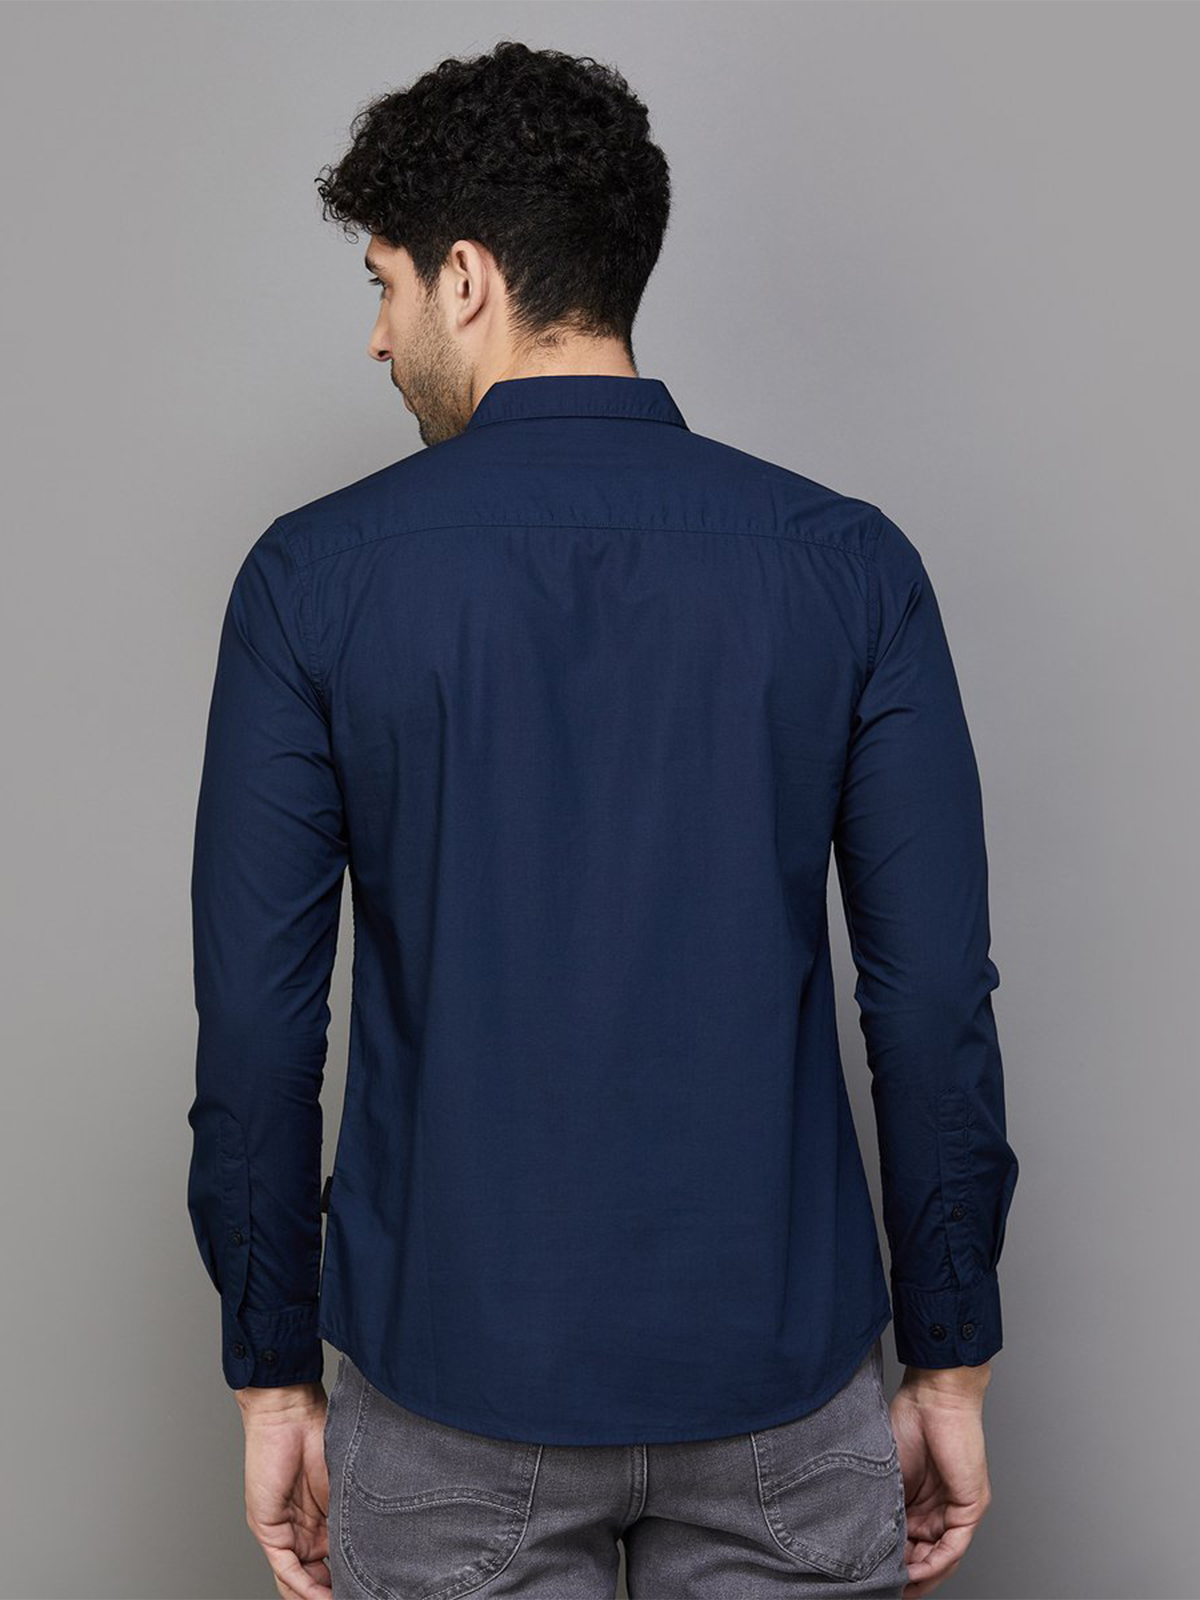 Buy Men Blue Slim Fit Textured Full Sleeves Casual Shirt Online - 757360 |  Van Heusen